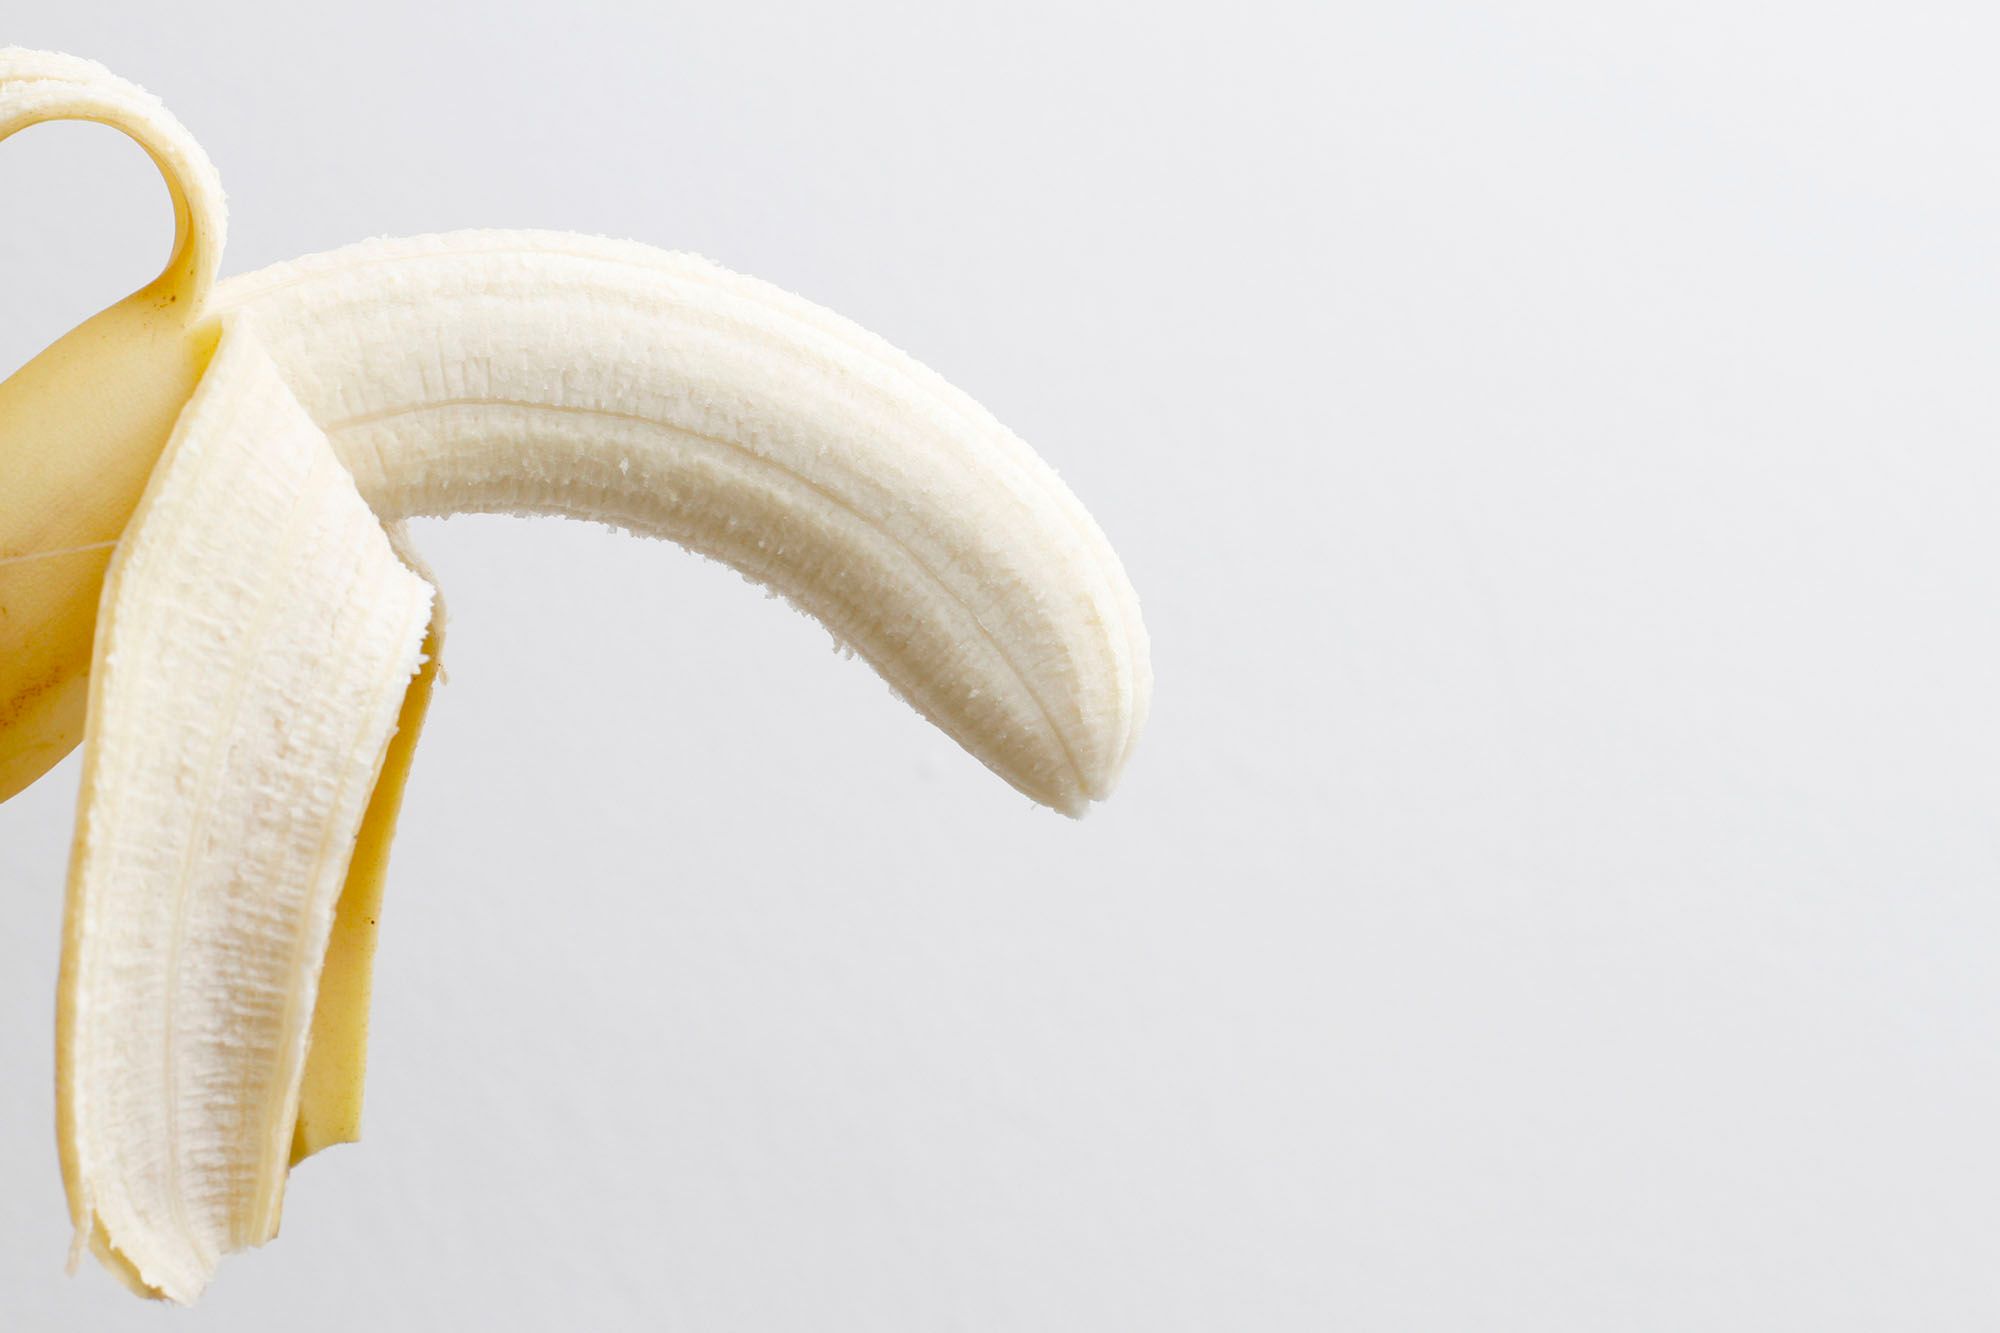 Halb geschälte Banane vor weißem Hintergrund